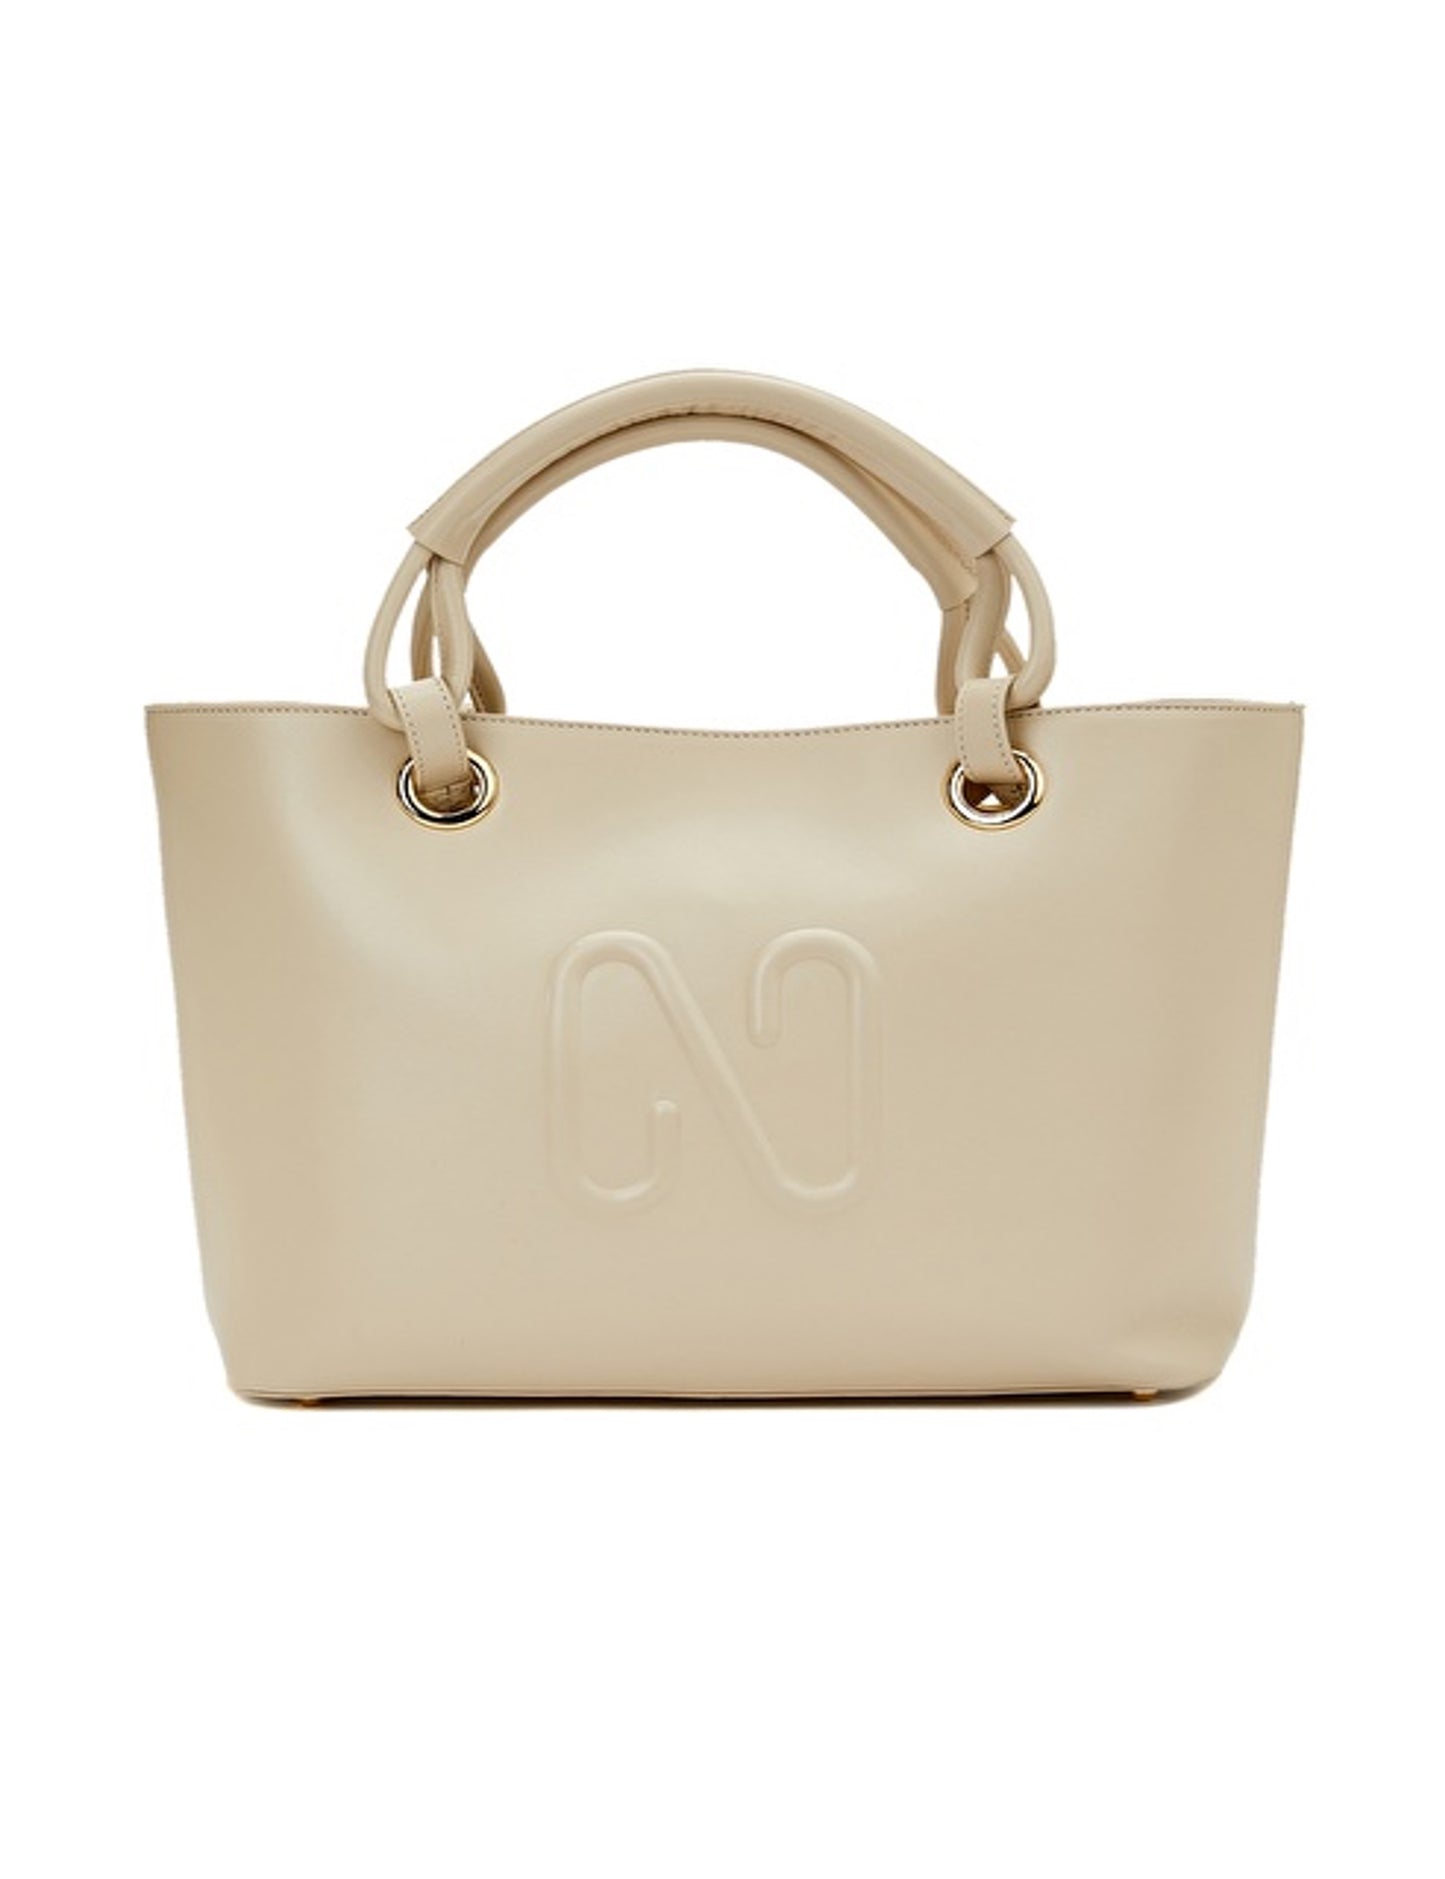 Woman Handbag 100% Leather Bag Cream Color